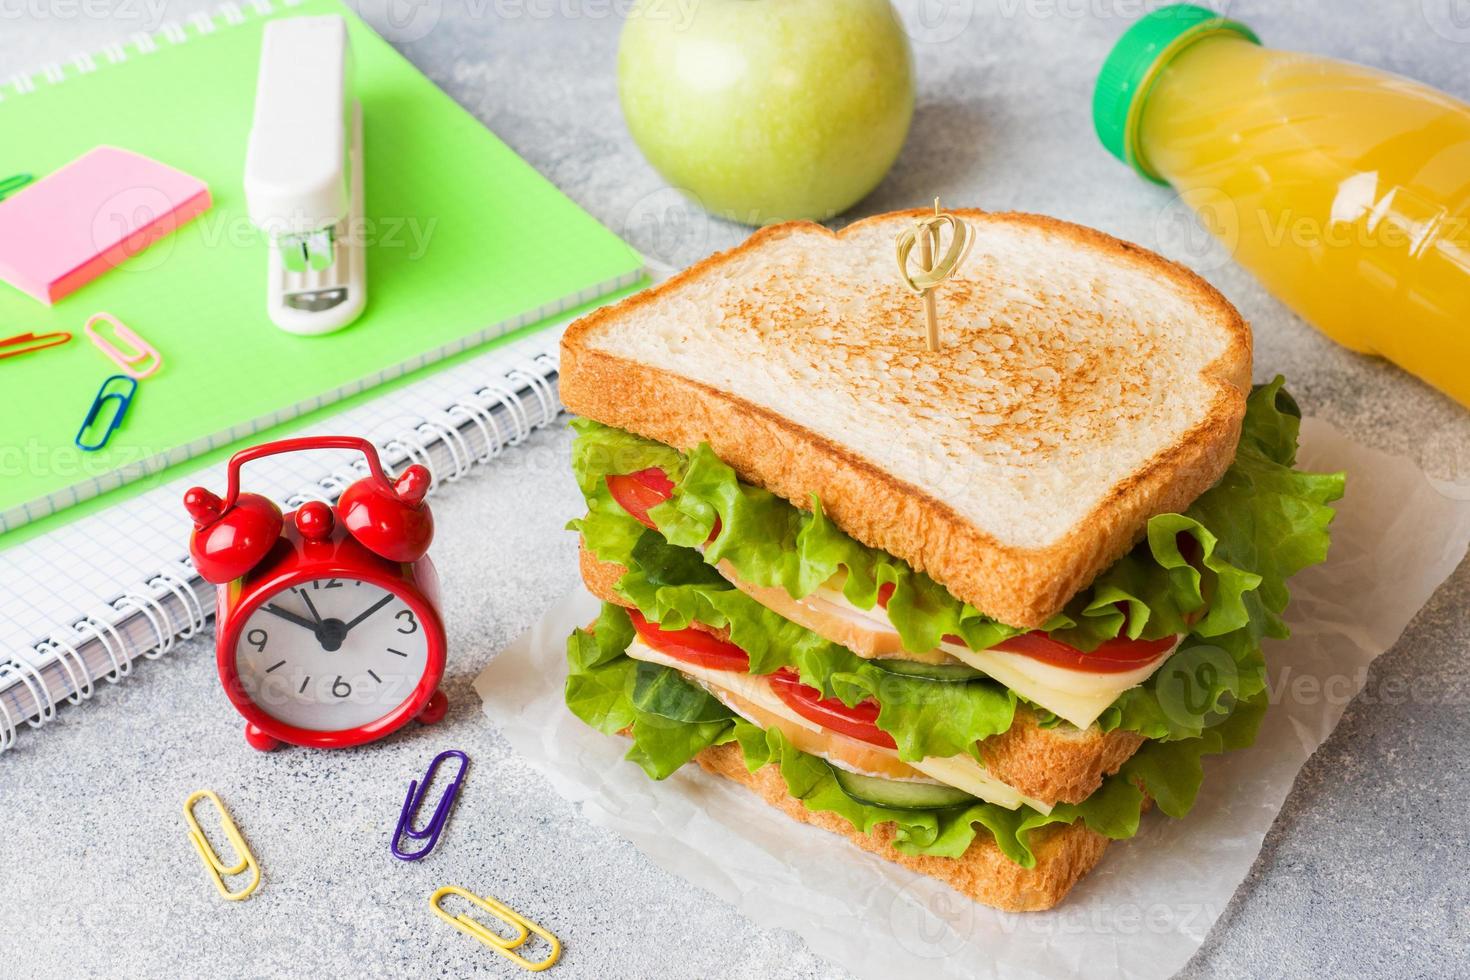 pranzo salutare per la scuola con panino, mela fresca e succo d'arancia. forniture scolastiche colorate assortite. copia spazio. foto